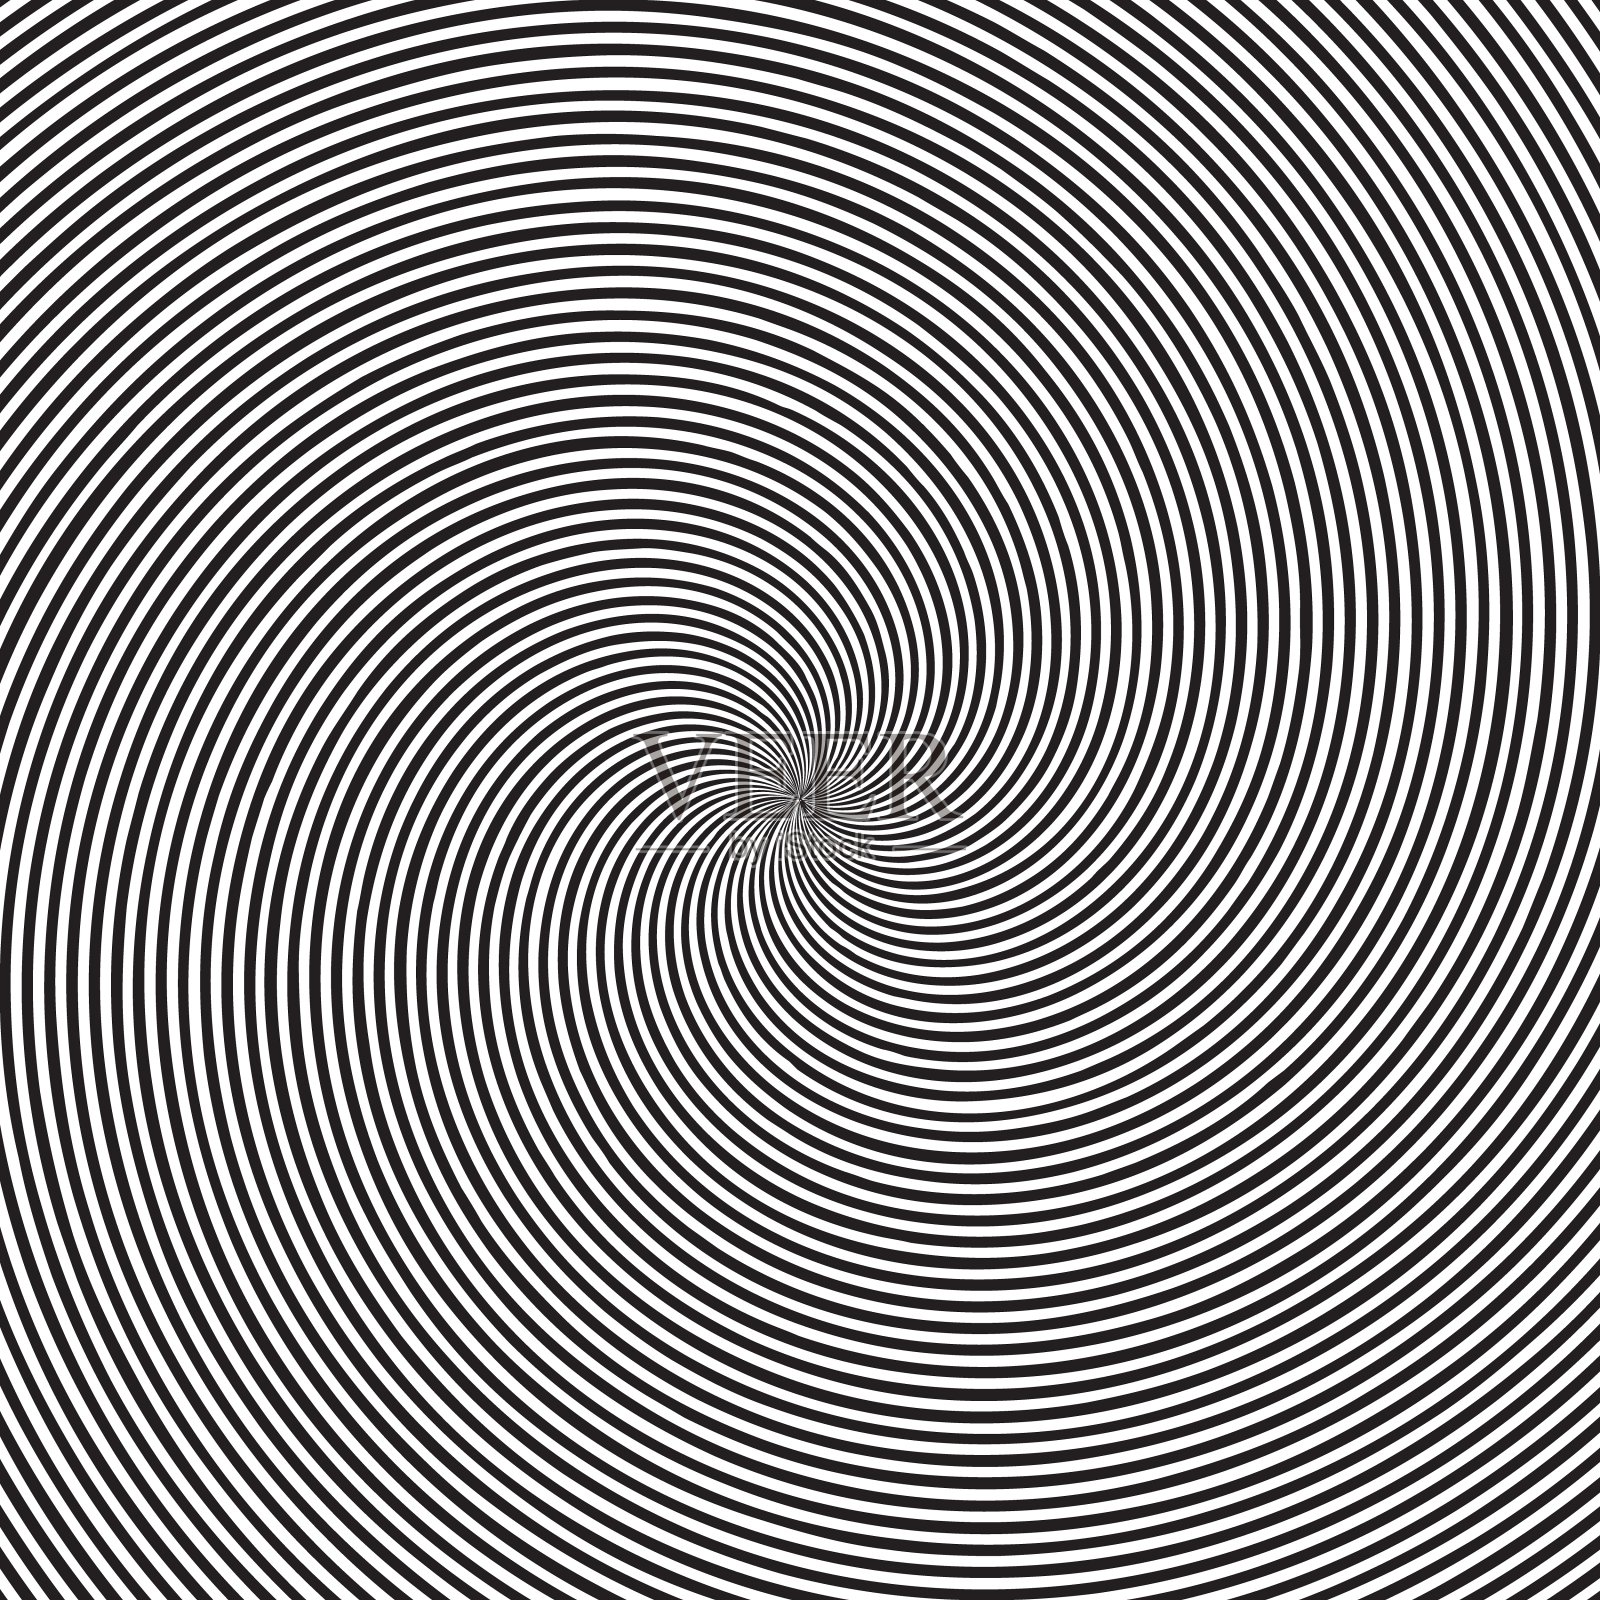 迷幻的方形背景与圆形黑白漩涡，螺旋或扭曲。背景与圆形光学错觉或线性催眠模式。插画图片素材